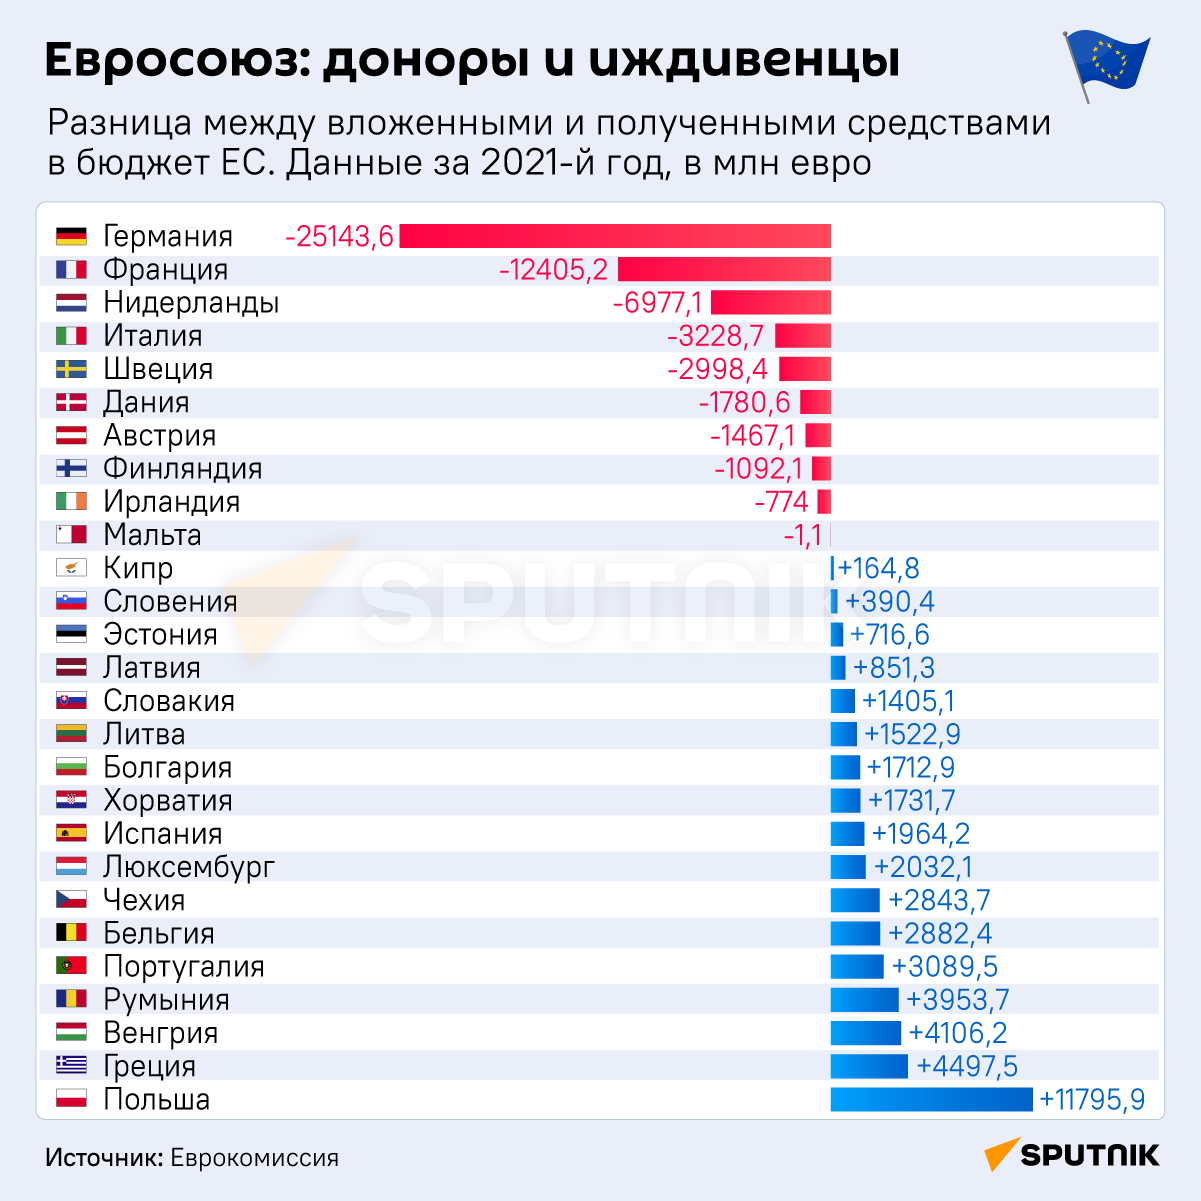 Евросоюз: доноры и иждивенцы - Sputnik Беларусь